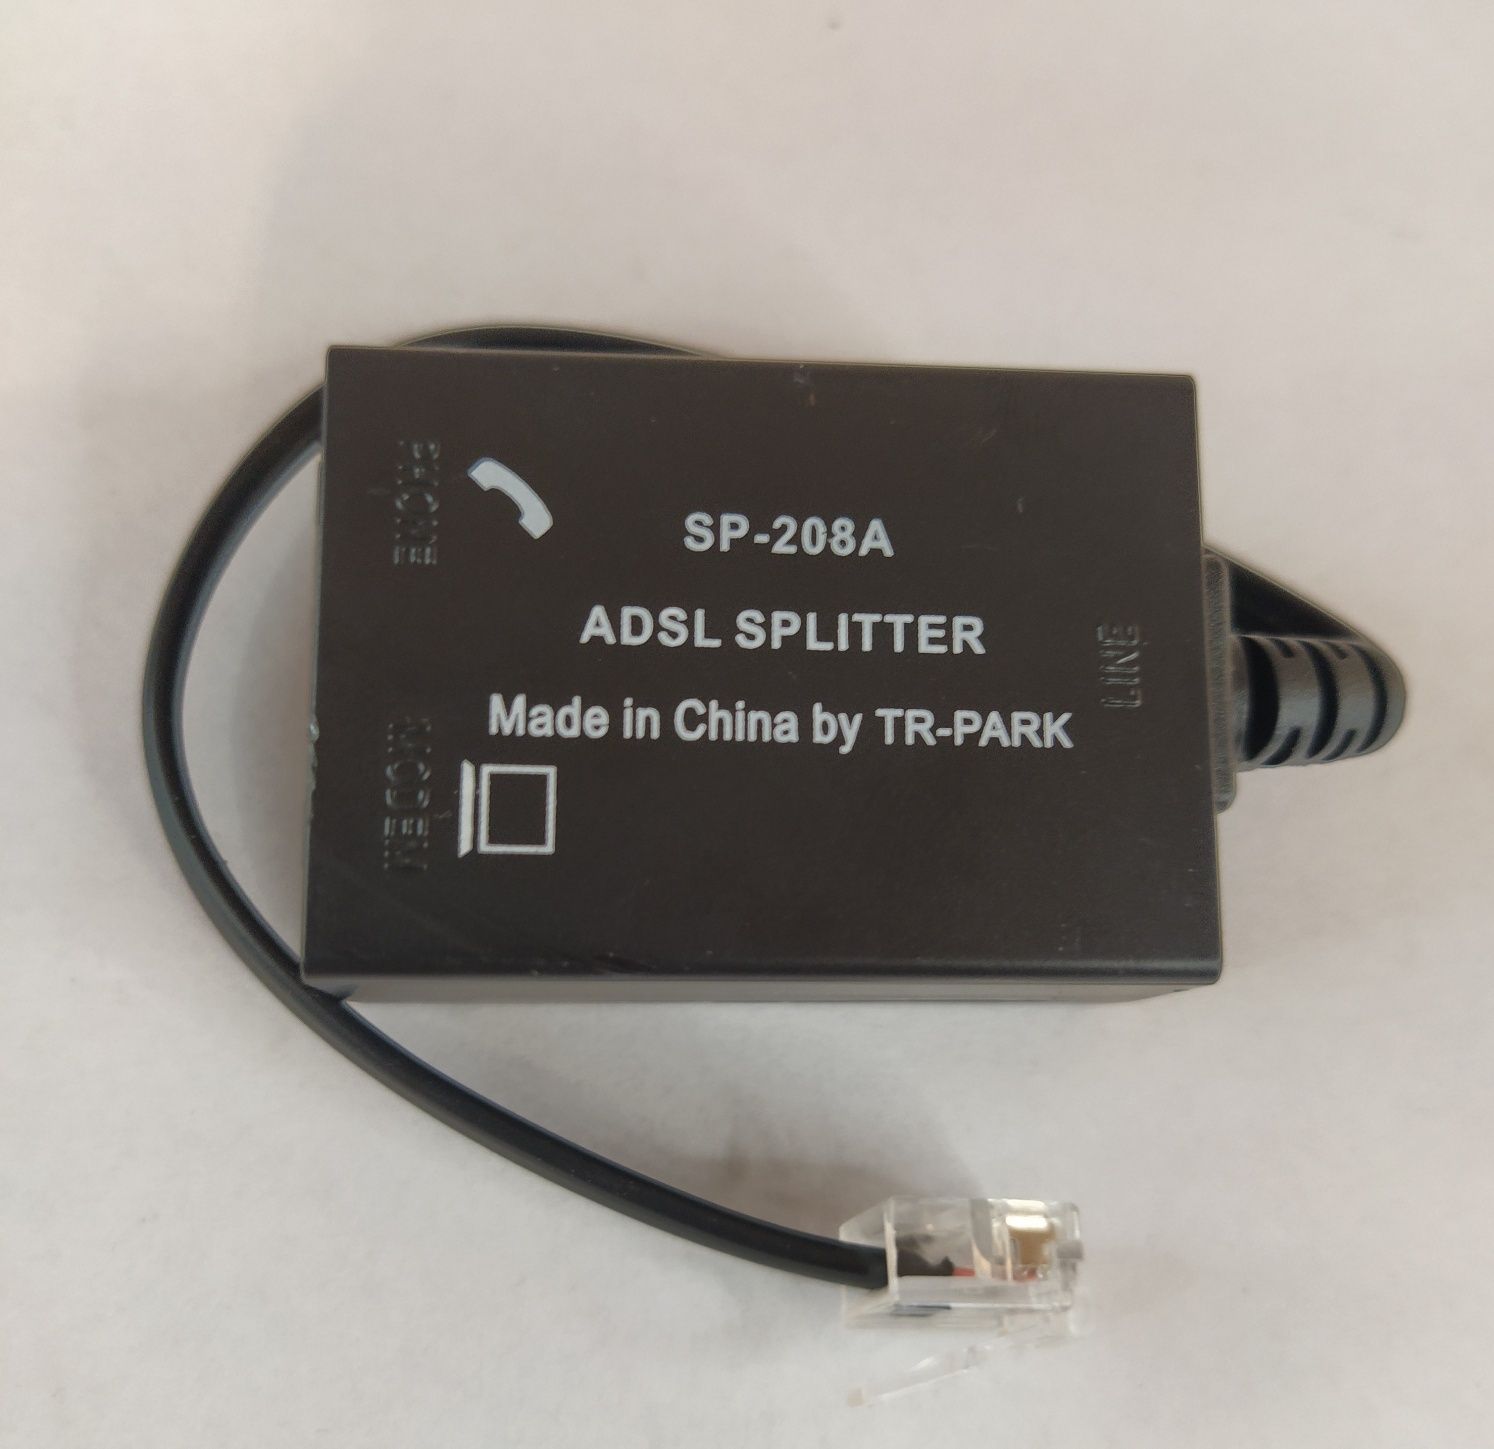 Rozdzielacz ADSL SPLITTER SP-208A plus 2 przewody telefoniczne nowe